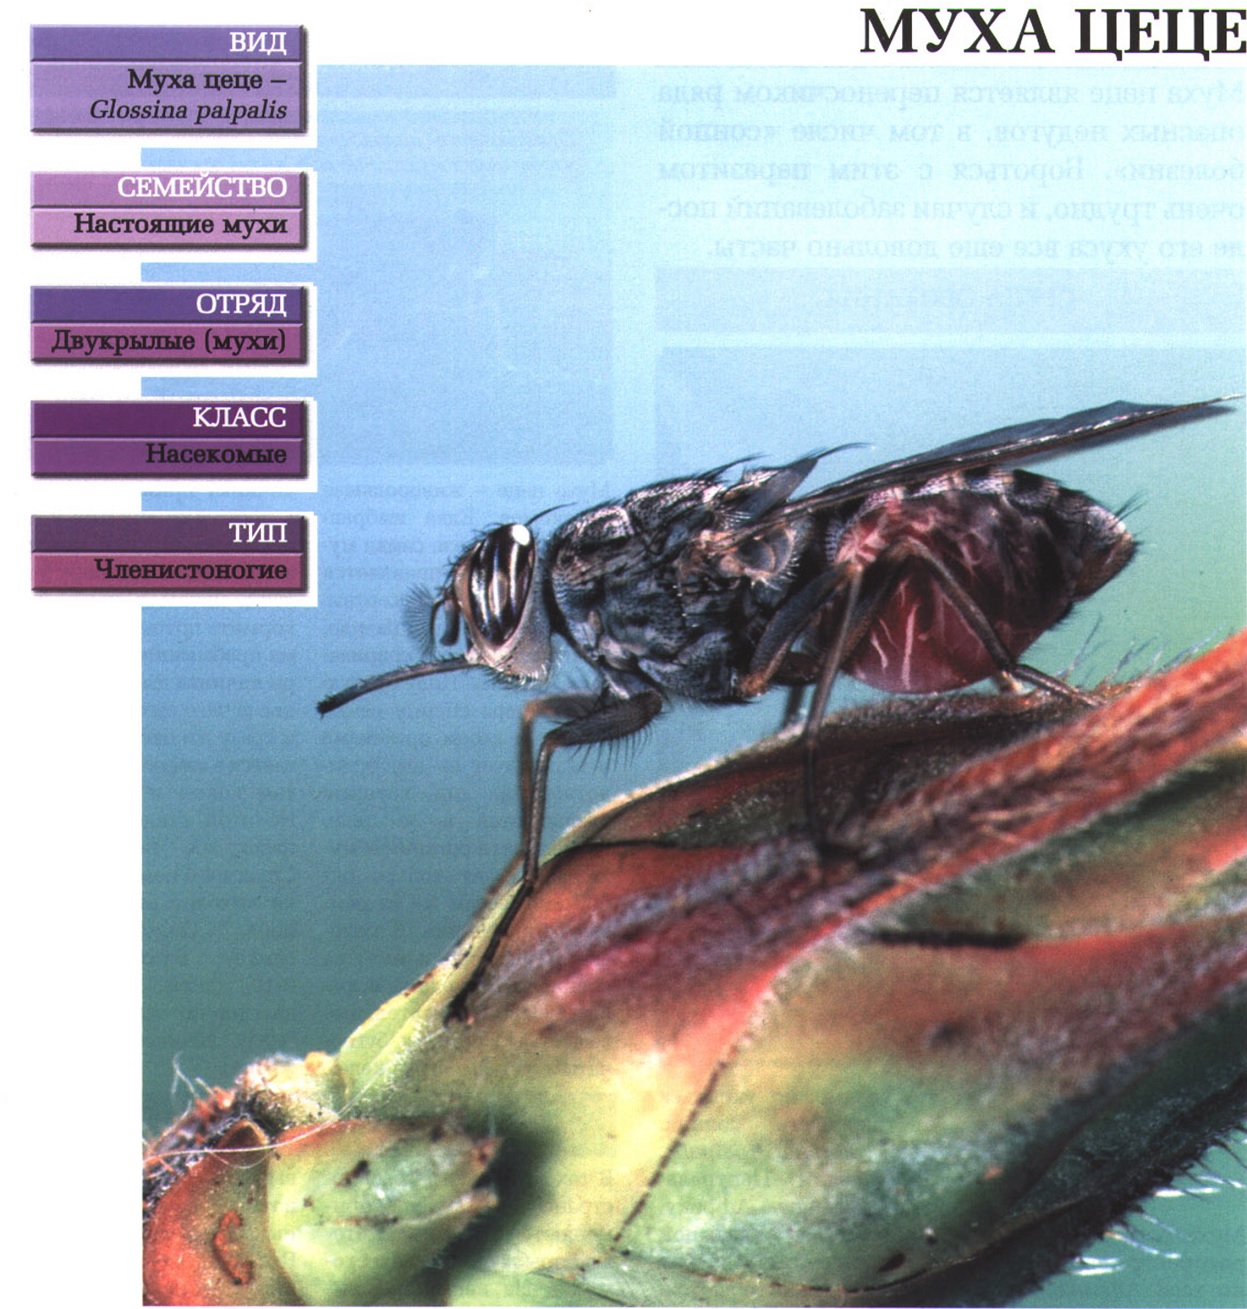 Систематика (научная классификация) мухи цеце. Glossina palpalis.